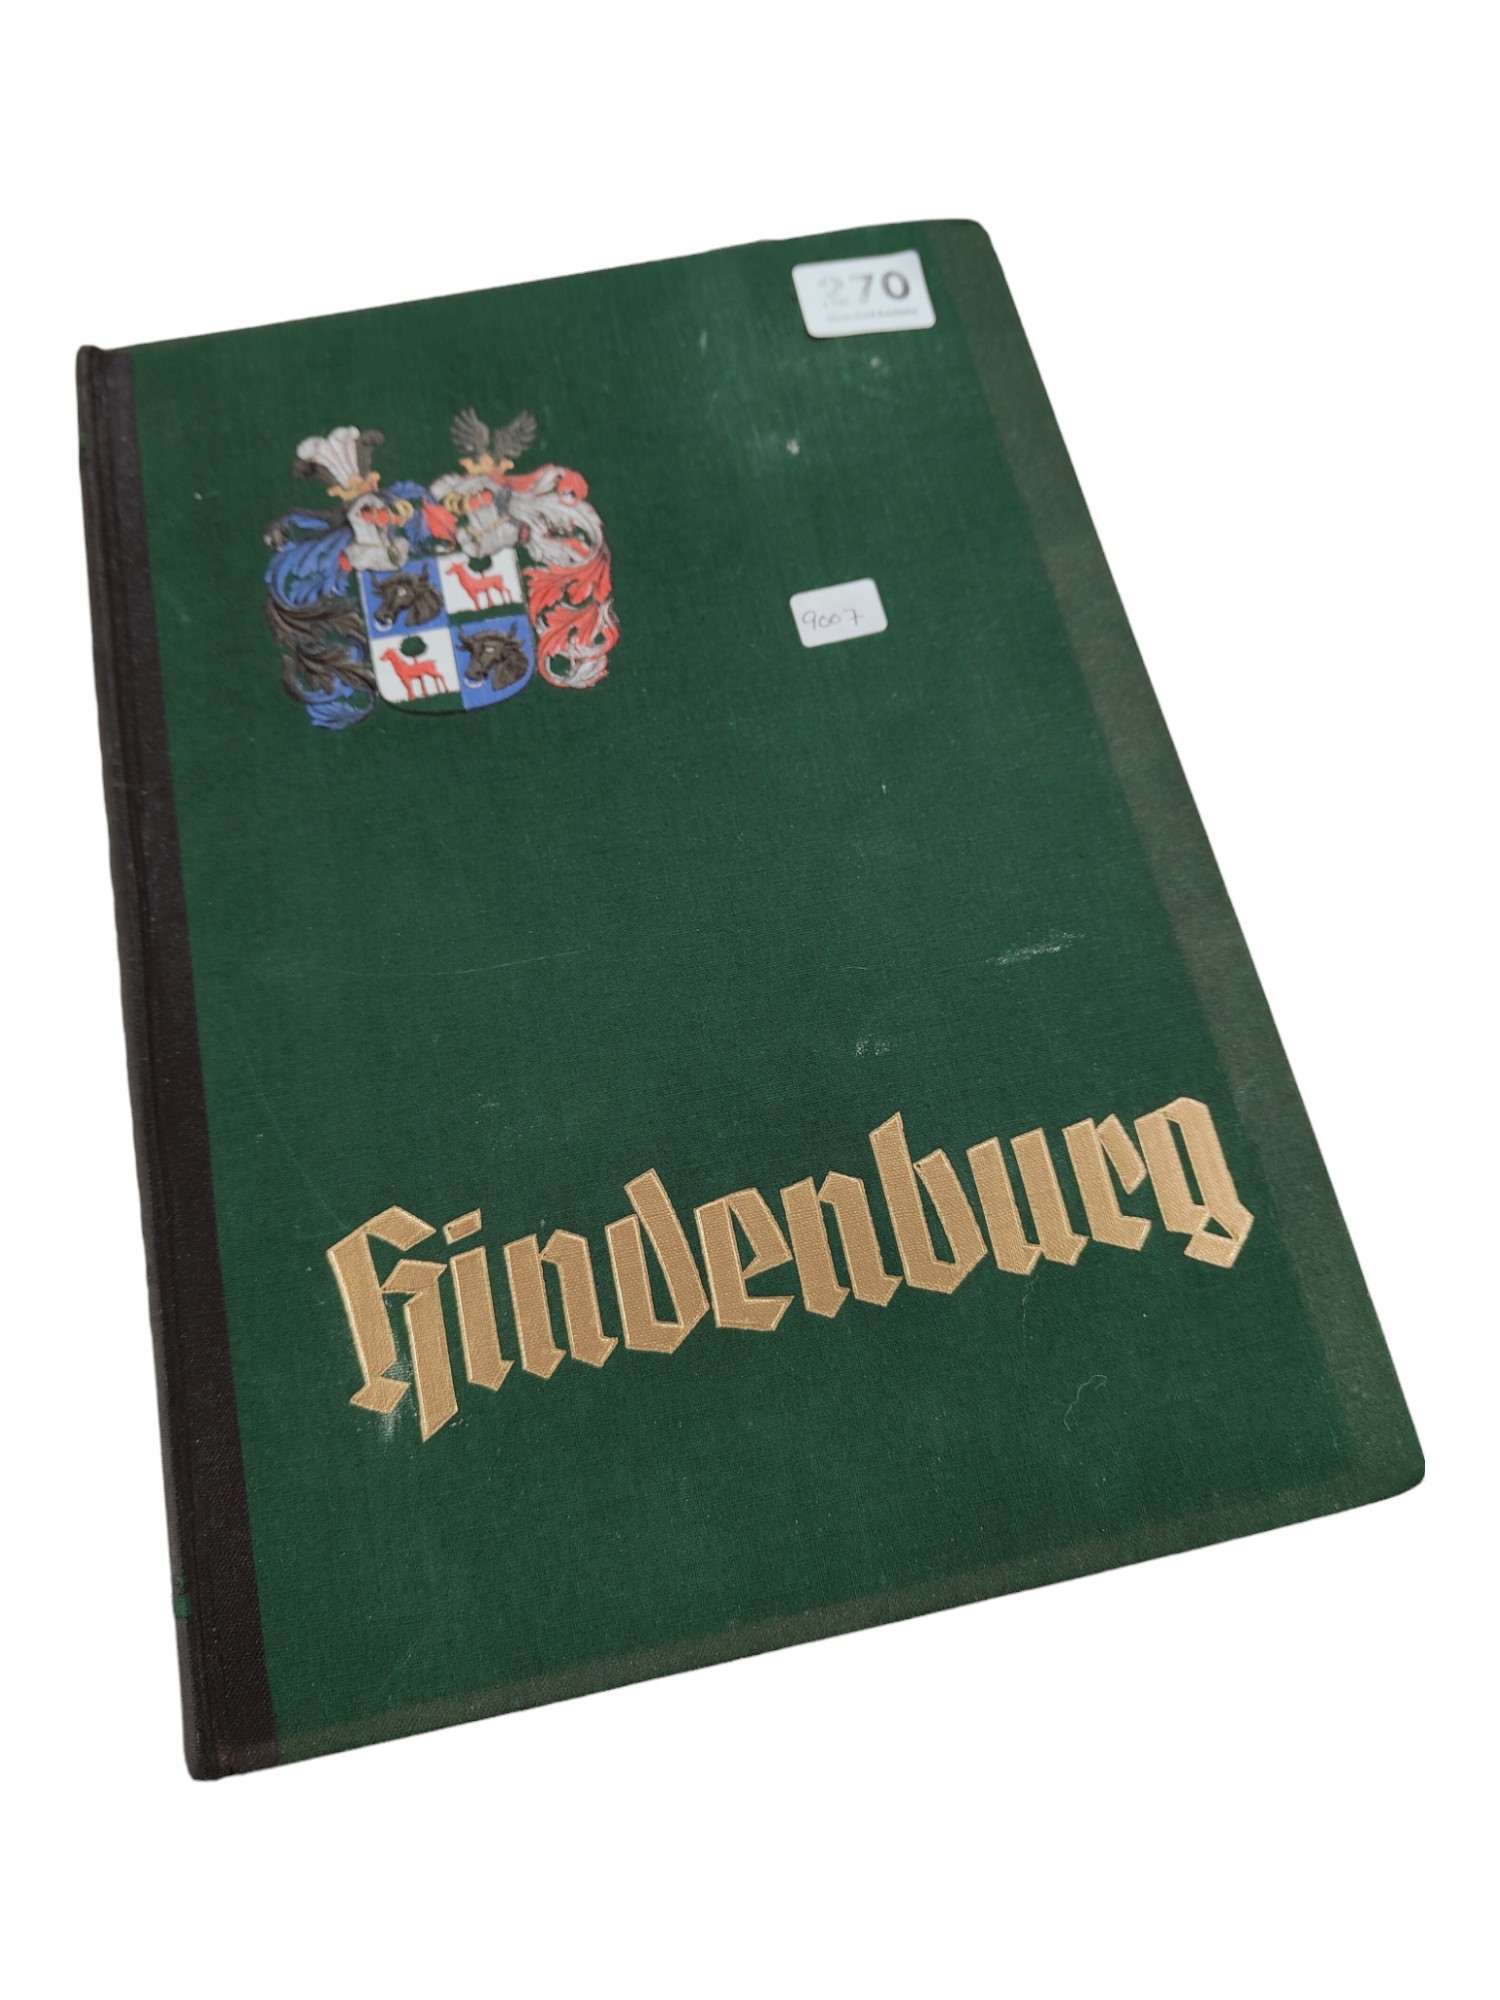 RARE GERMAN ALBUM: HINDENBURG